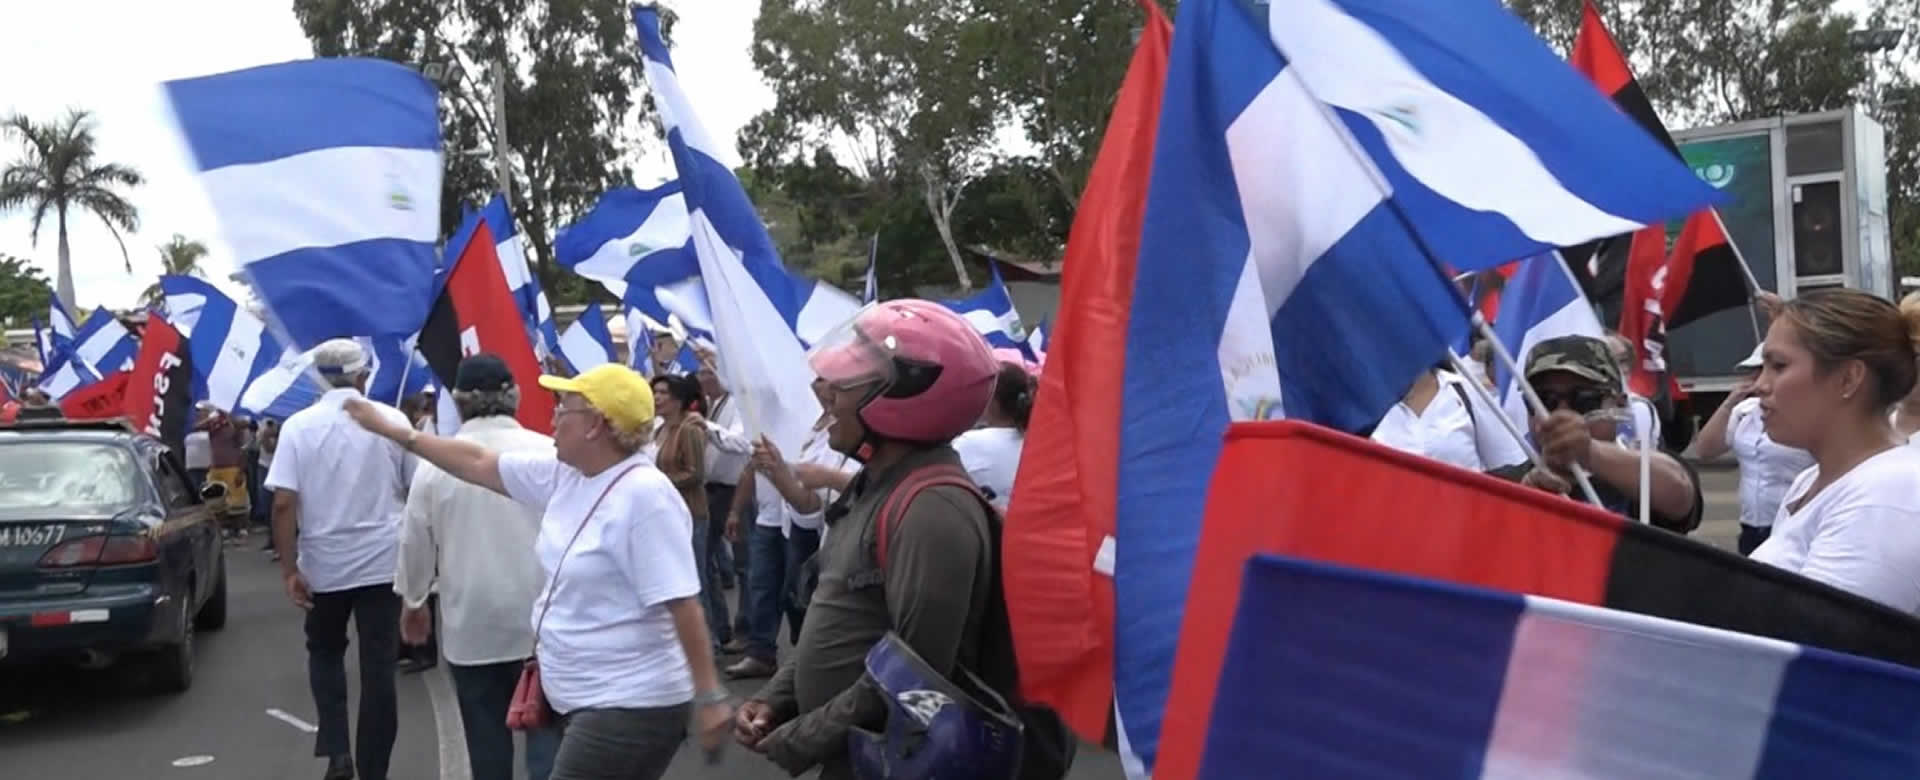 Gobierno y familias nicaragüenses quieren la paz